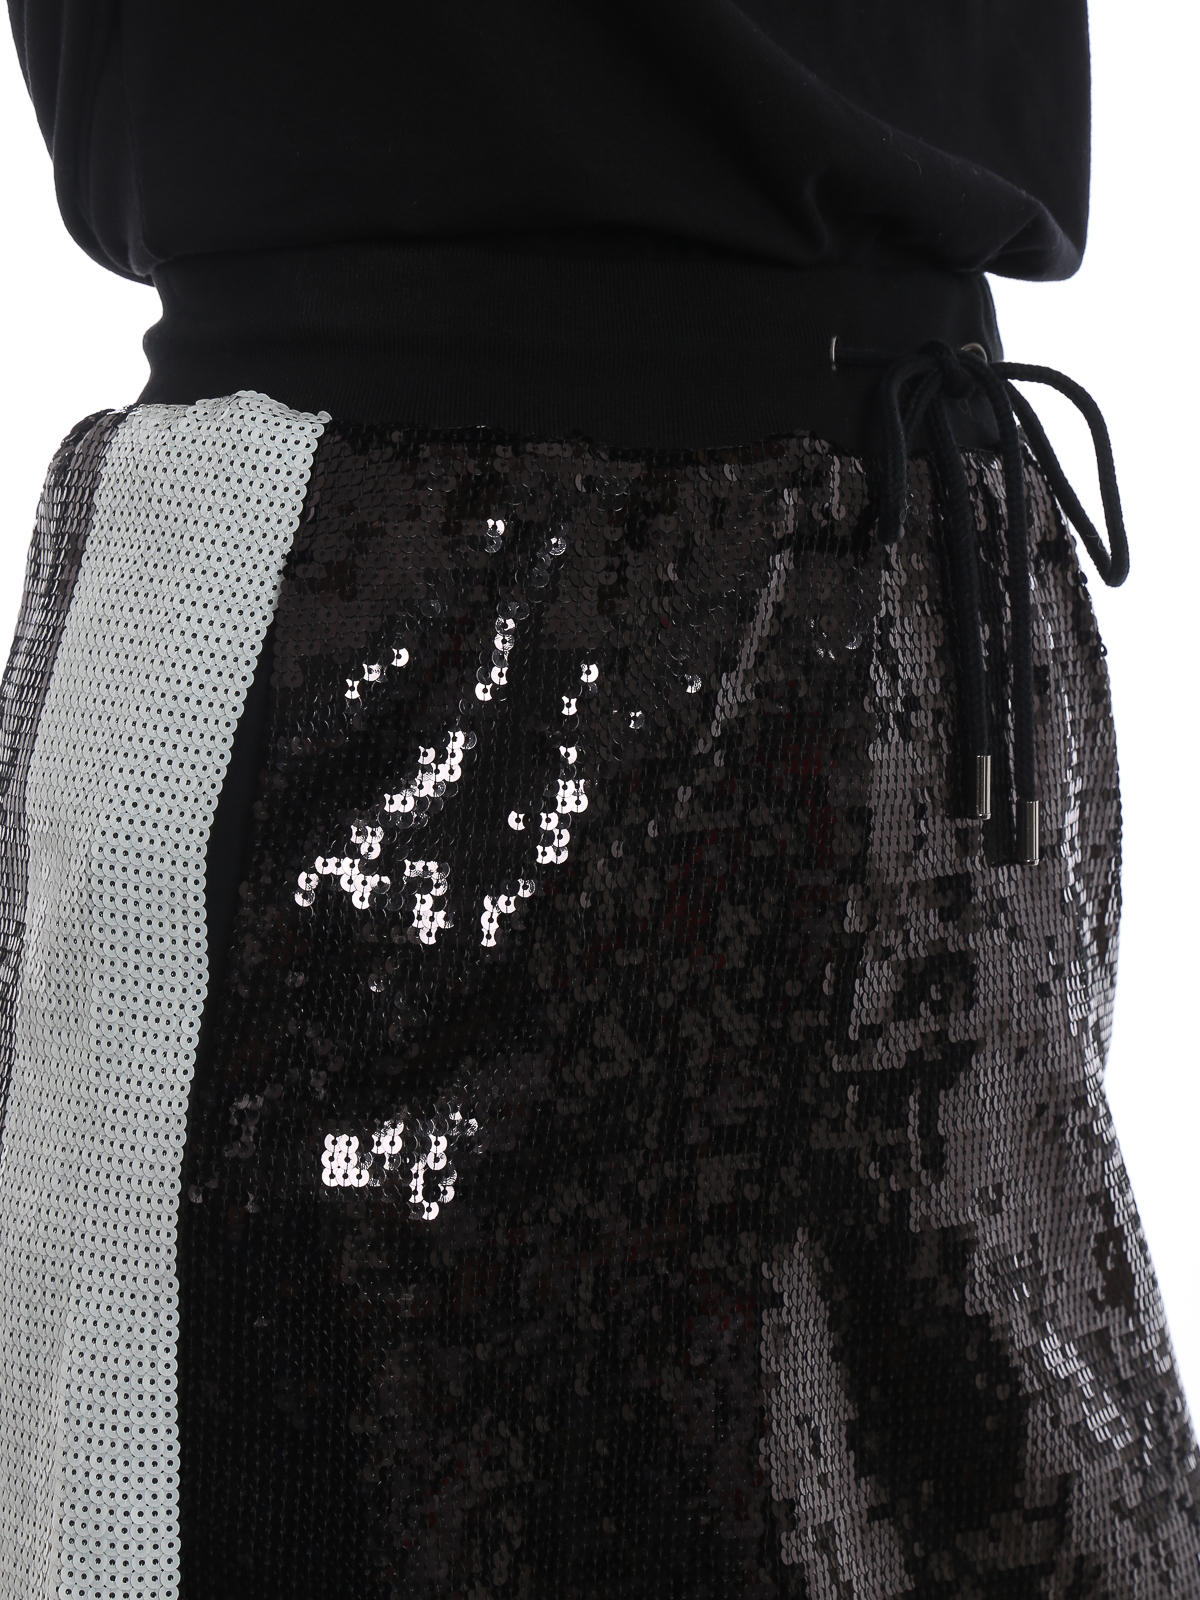 Mini skirts Alberta Ferretti - Black sequined mini skirt - J012166161555